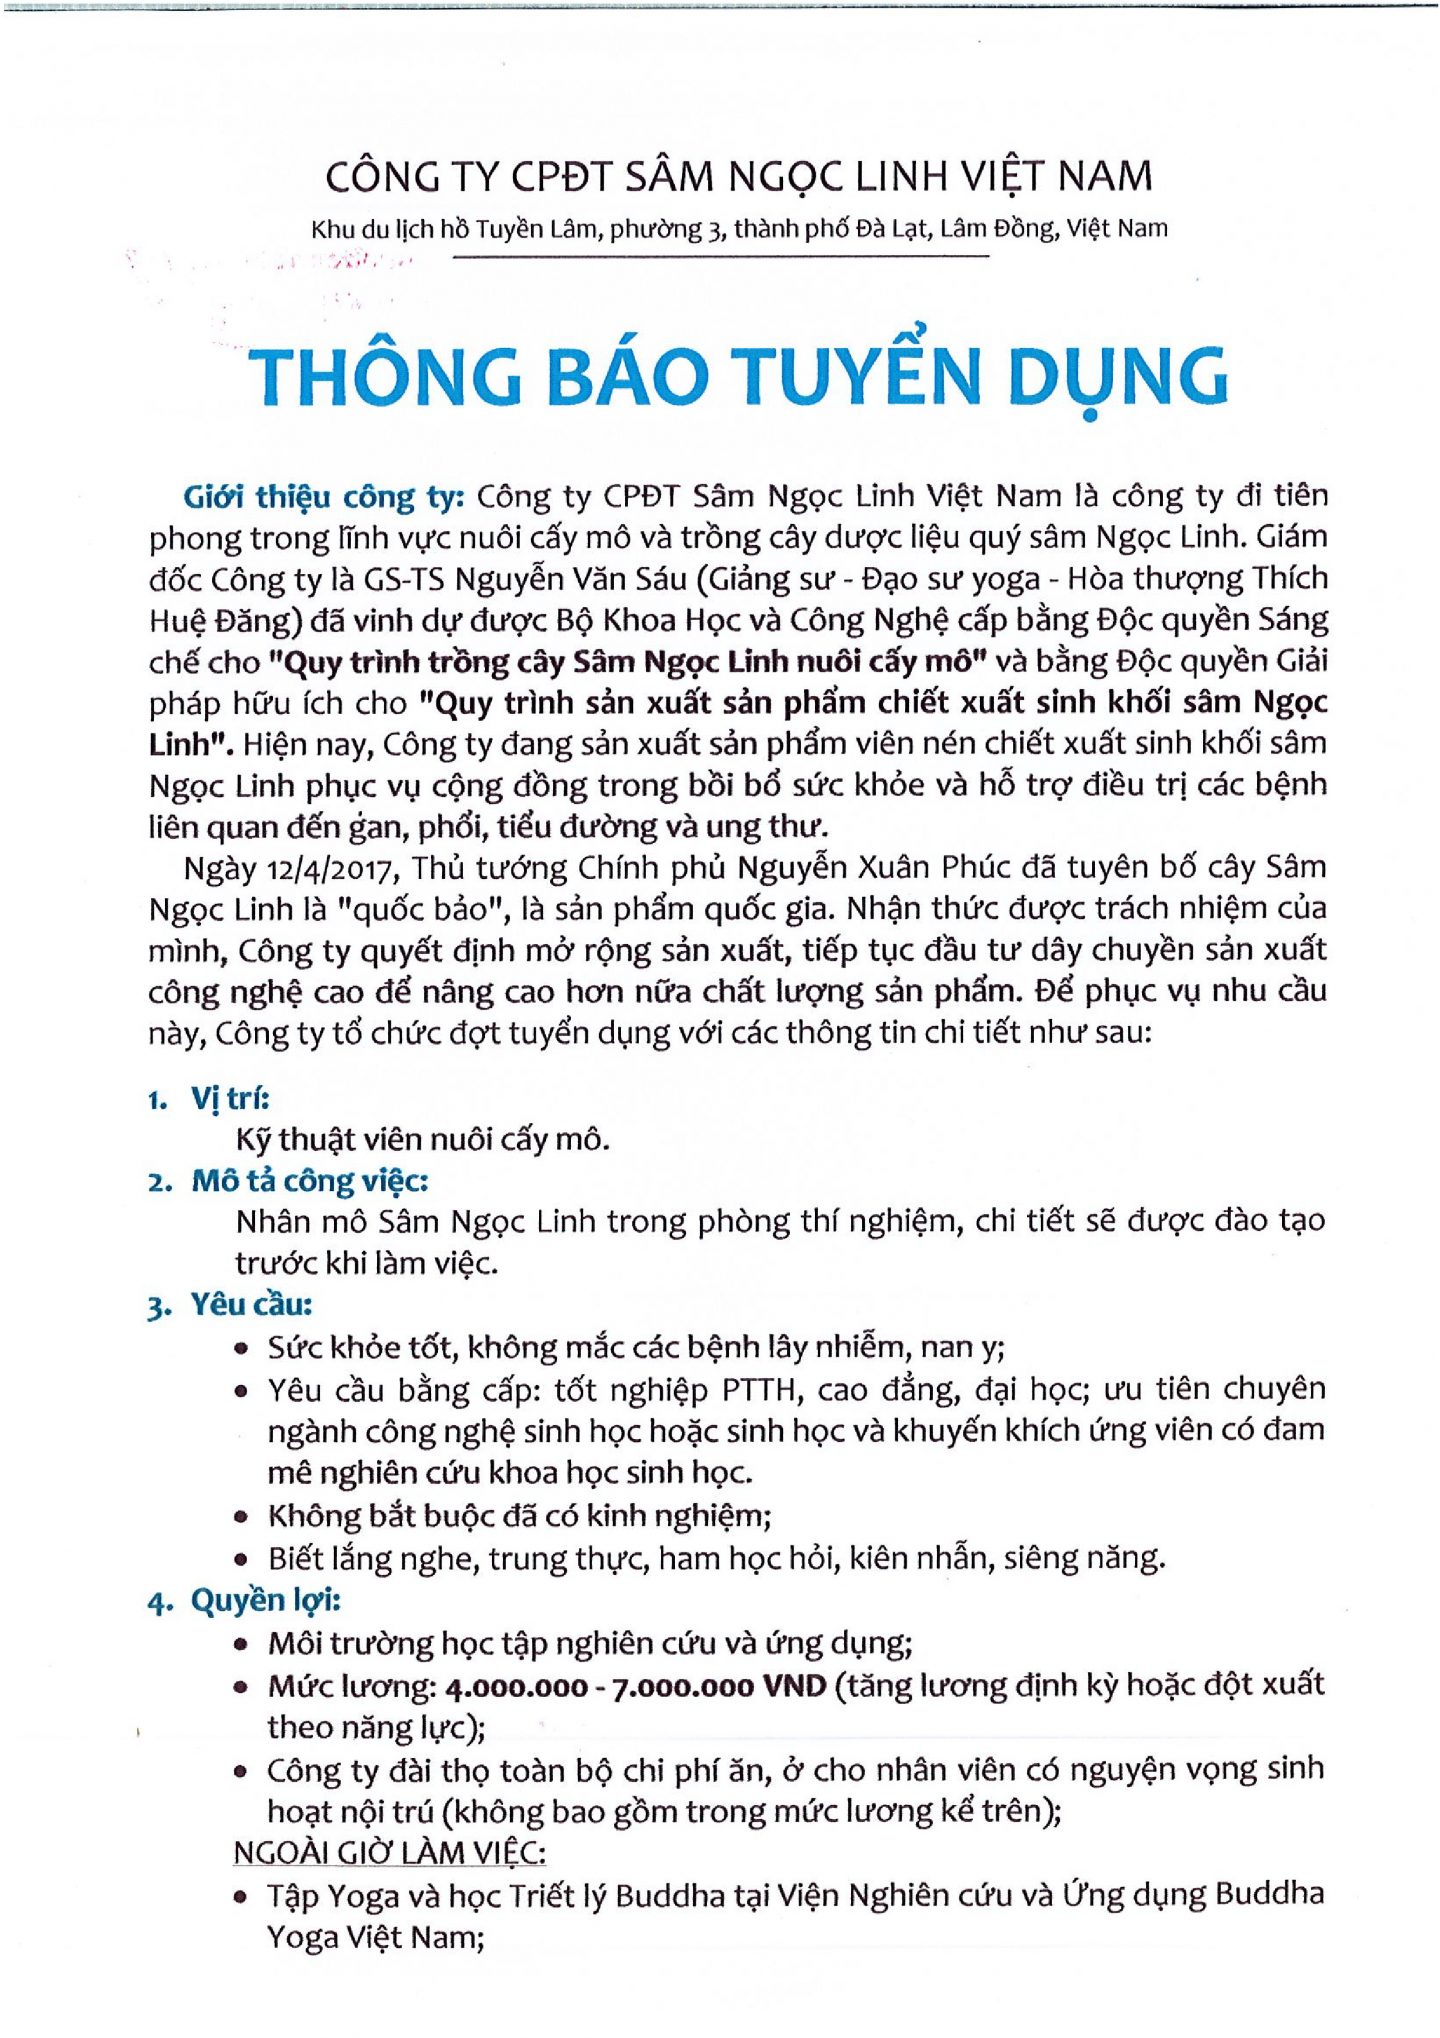 TBTD Sâm Ngọc Linh 001